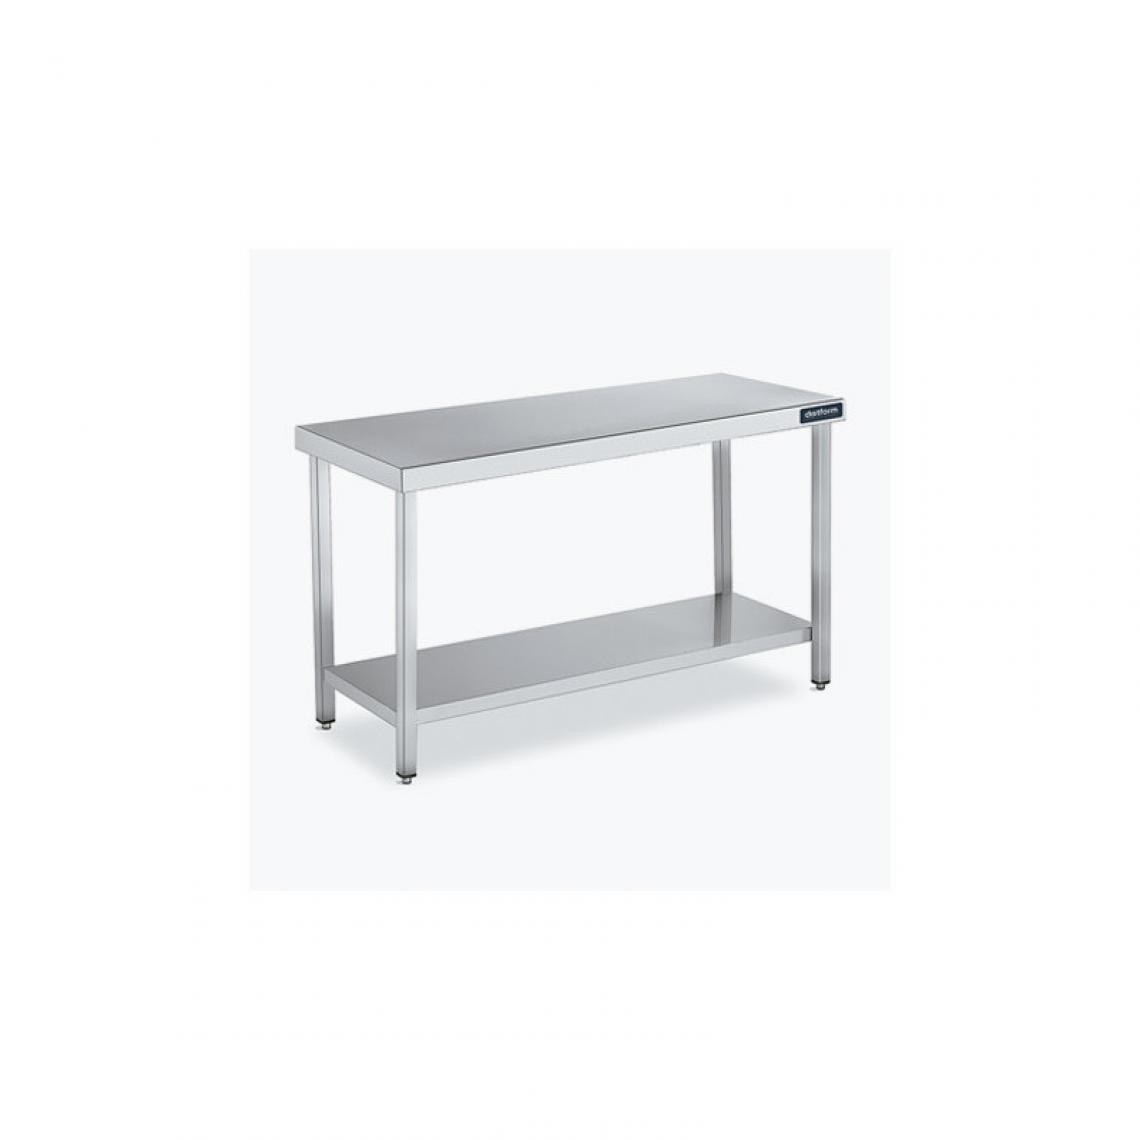 DISTFORM - Table Centrale 600x600 avec Étagère - Distform - Inox 18/101400x600x850mm - Tables à manger